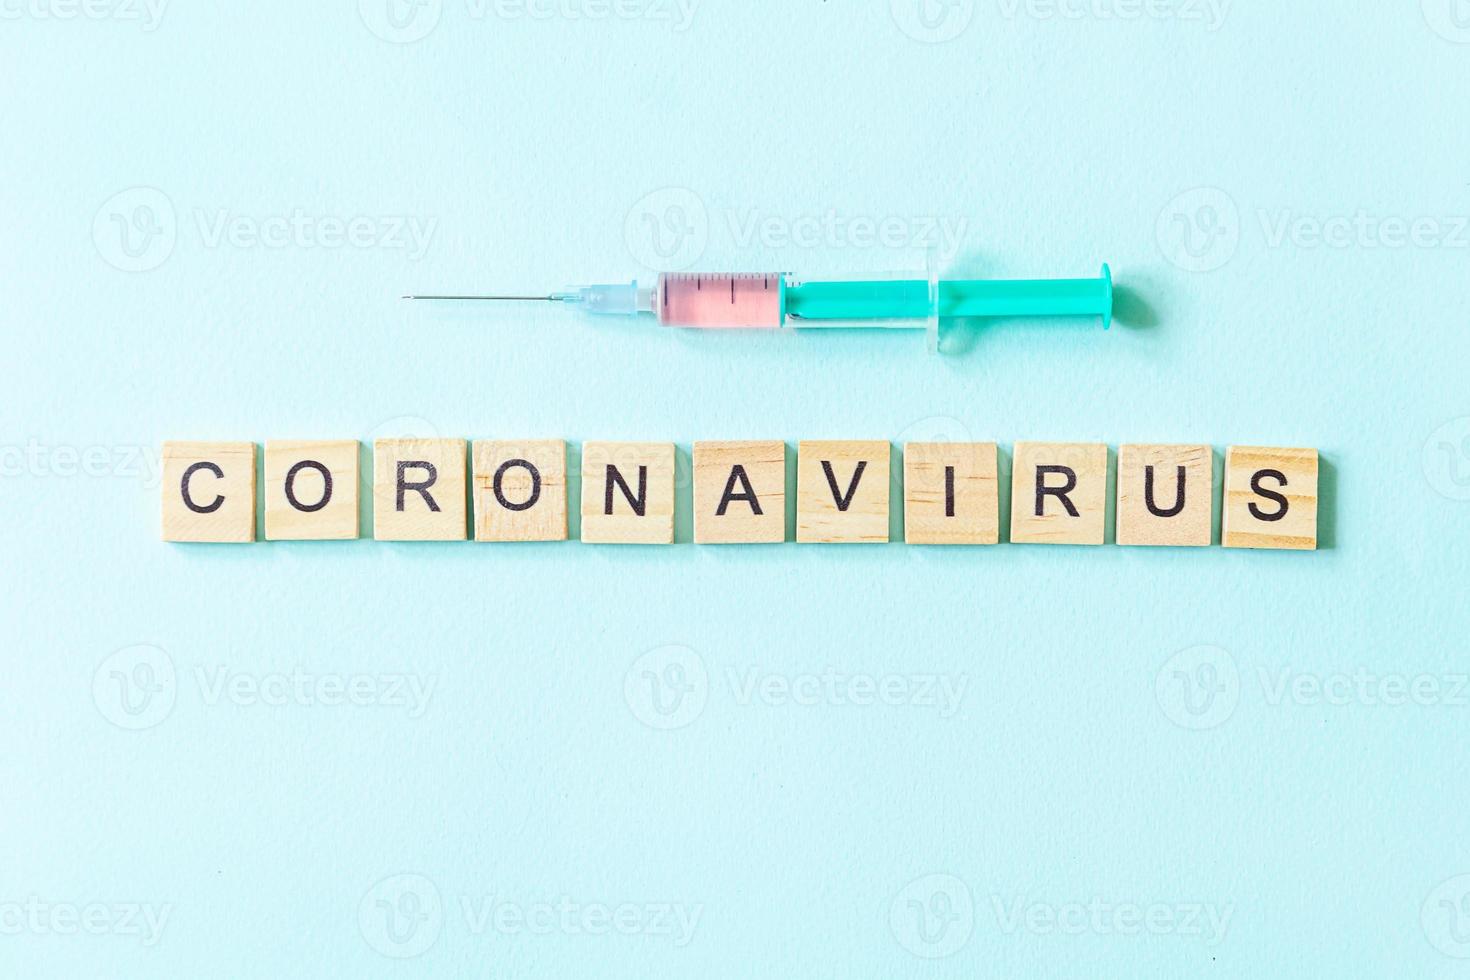 expression de texte coronavirus et seringue sur fond bleu pastel. nouveau coronavirus 2019-ncov mers-cov covid-19 concept de vaccin contre le virus du coronavirus du syndrome respiratoire du moyen-orient. photo